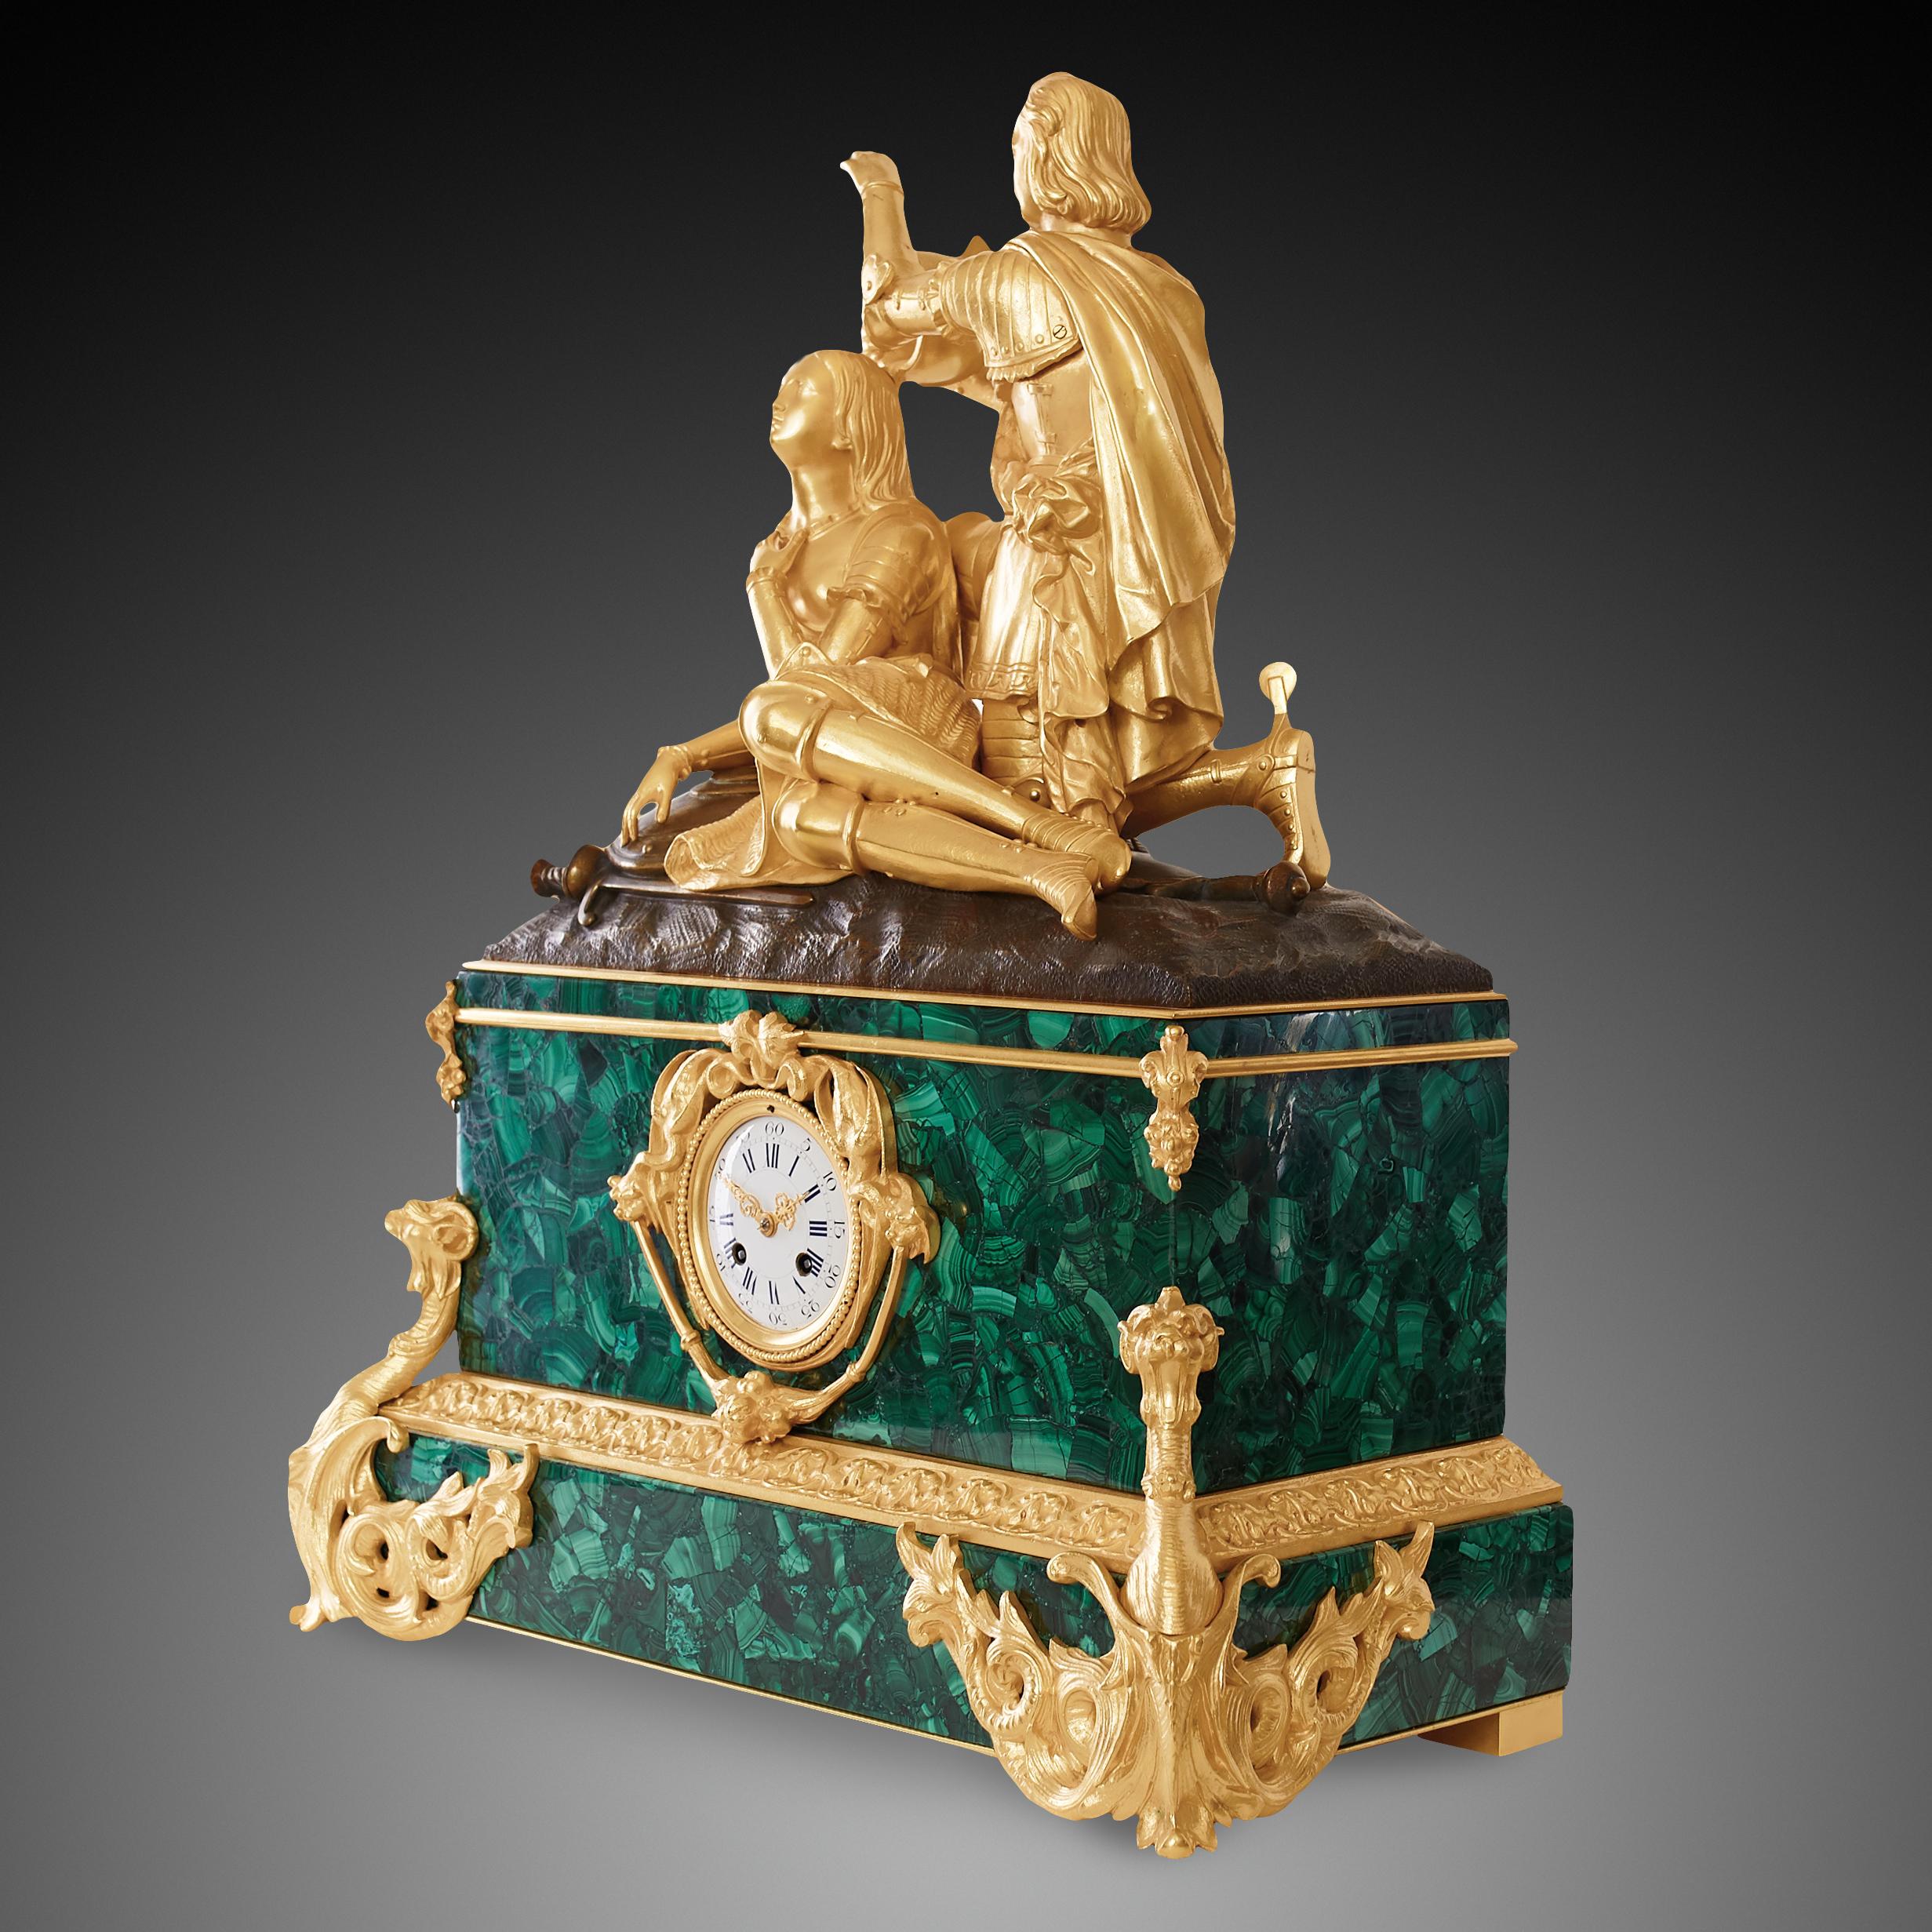 Diese Kaminsimsuhr ist im neoklassizistischen Stil der Zeit Napoleons III. (1824-1830) gefertigt. Der Sockel der Kaminuhr ist aus türkisfarbenem Malachit und goldenem Ormolu gefertigt. Malachit ist bekannt dafür, dass es eine hervorragende Farbe